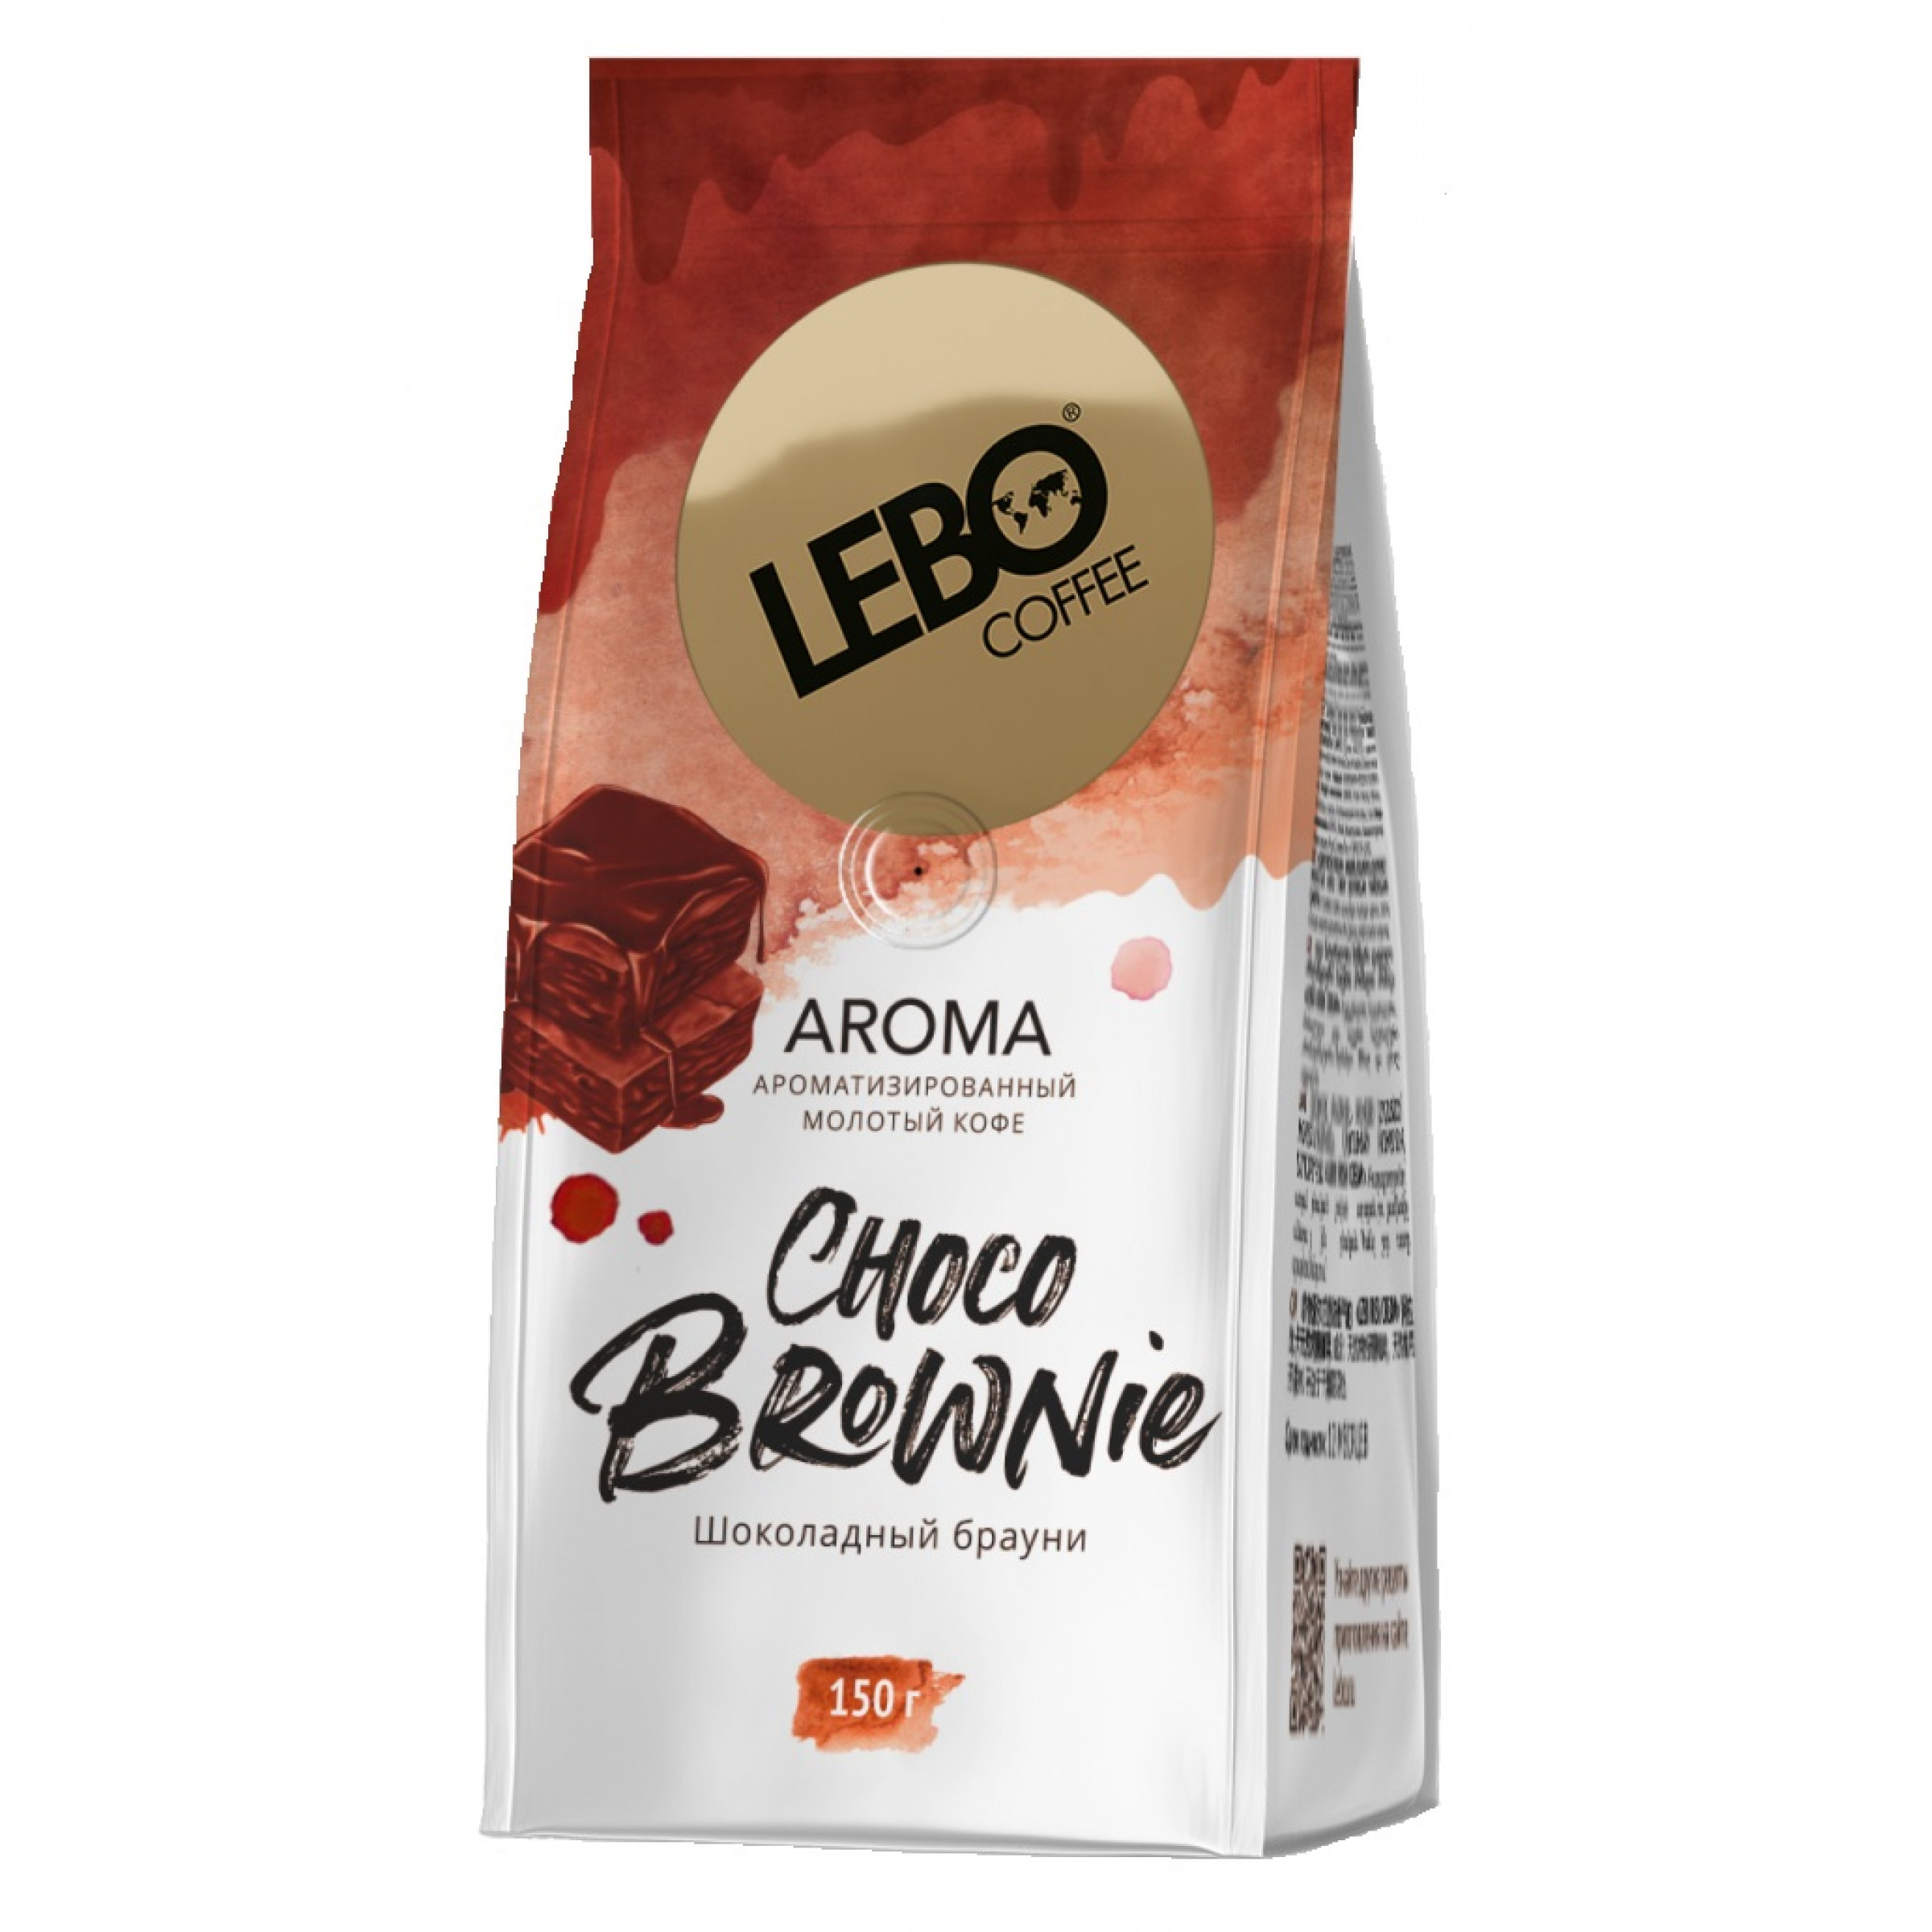 Ароматизированный молотый кофе Lebo Aroma Choco Brownie 150 г